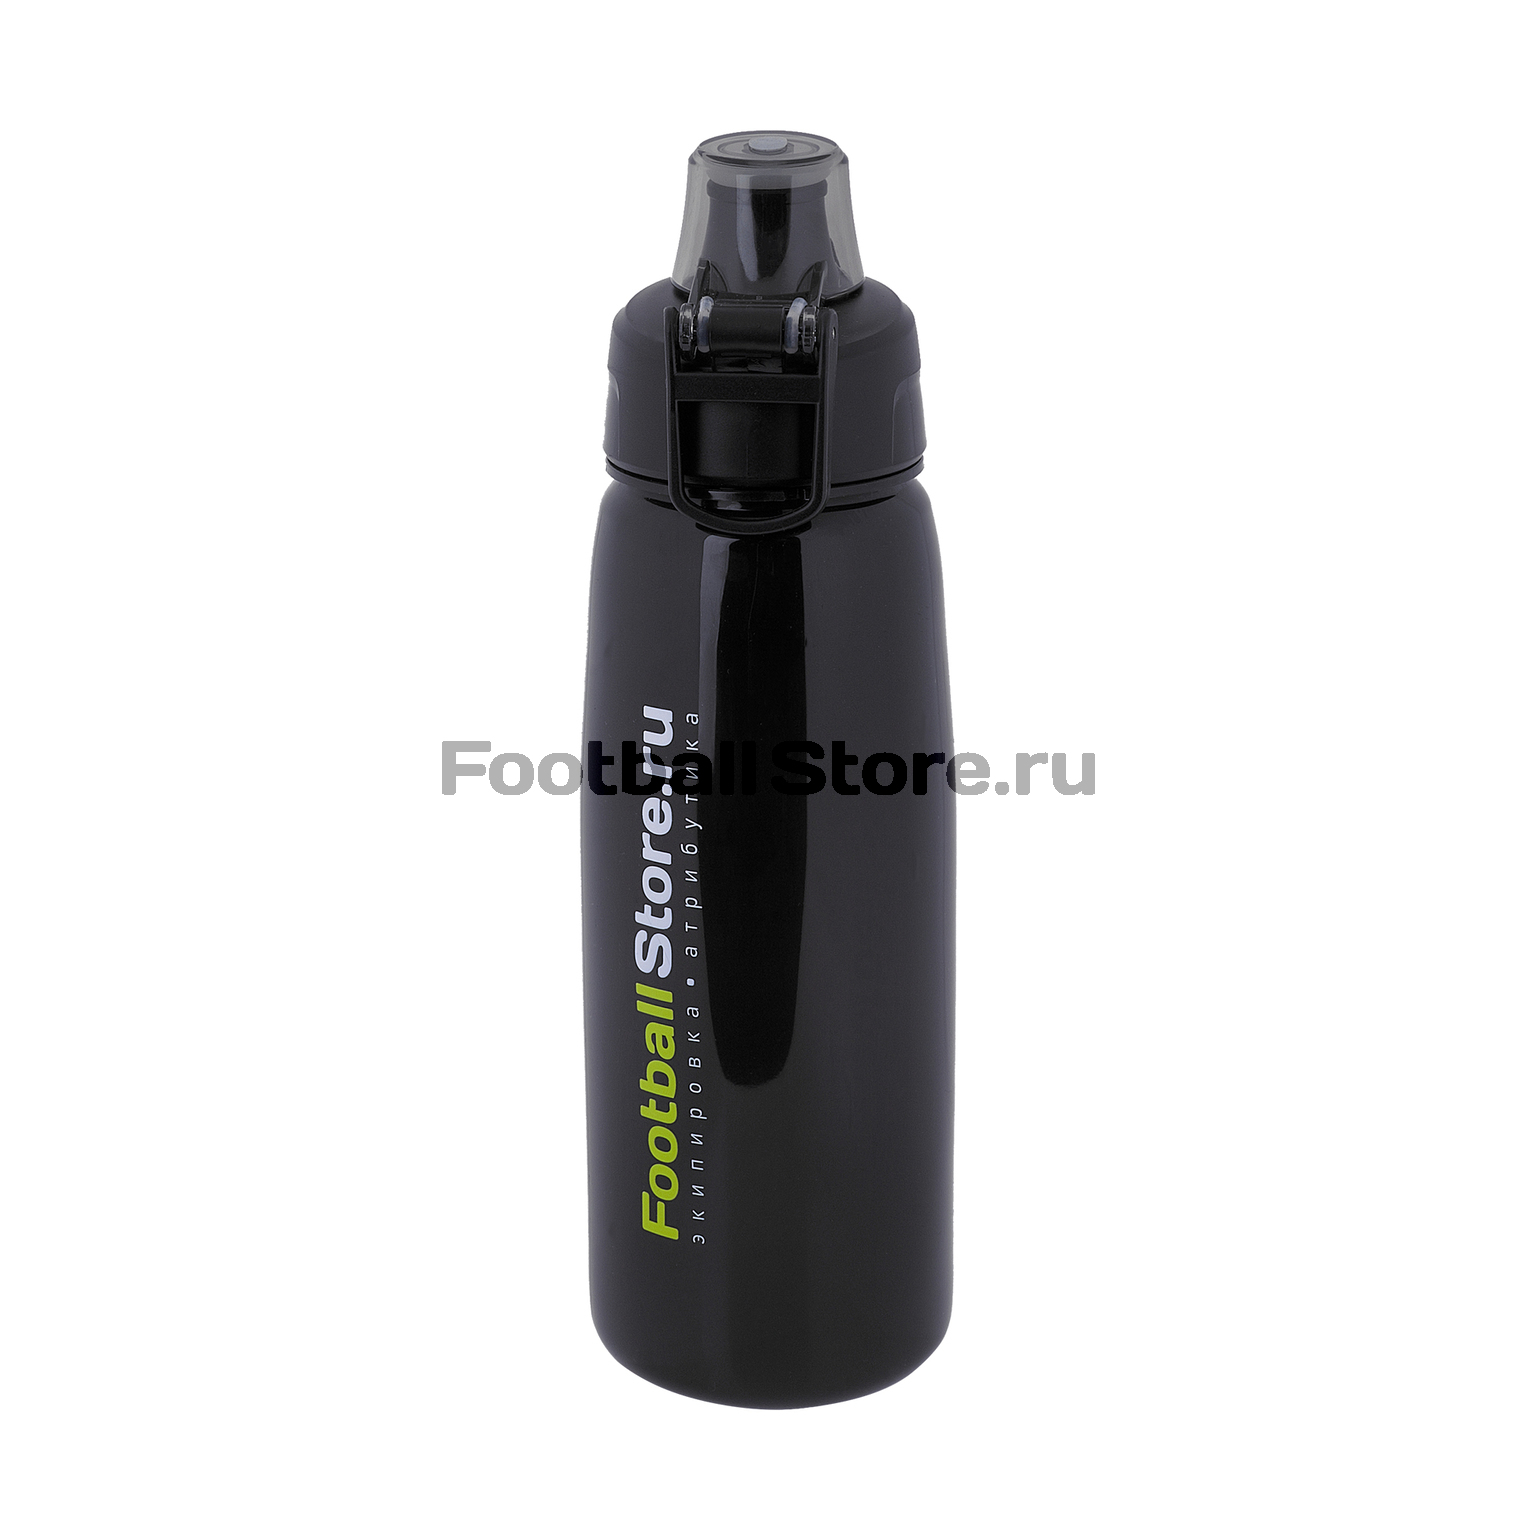 Бутылка для воды Footballstore N0000FS